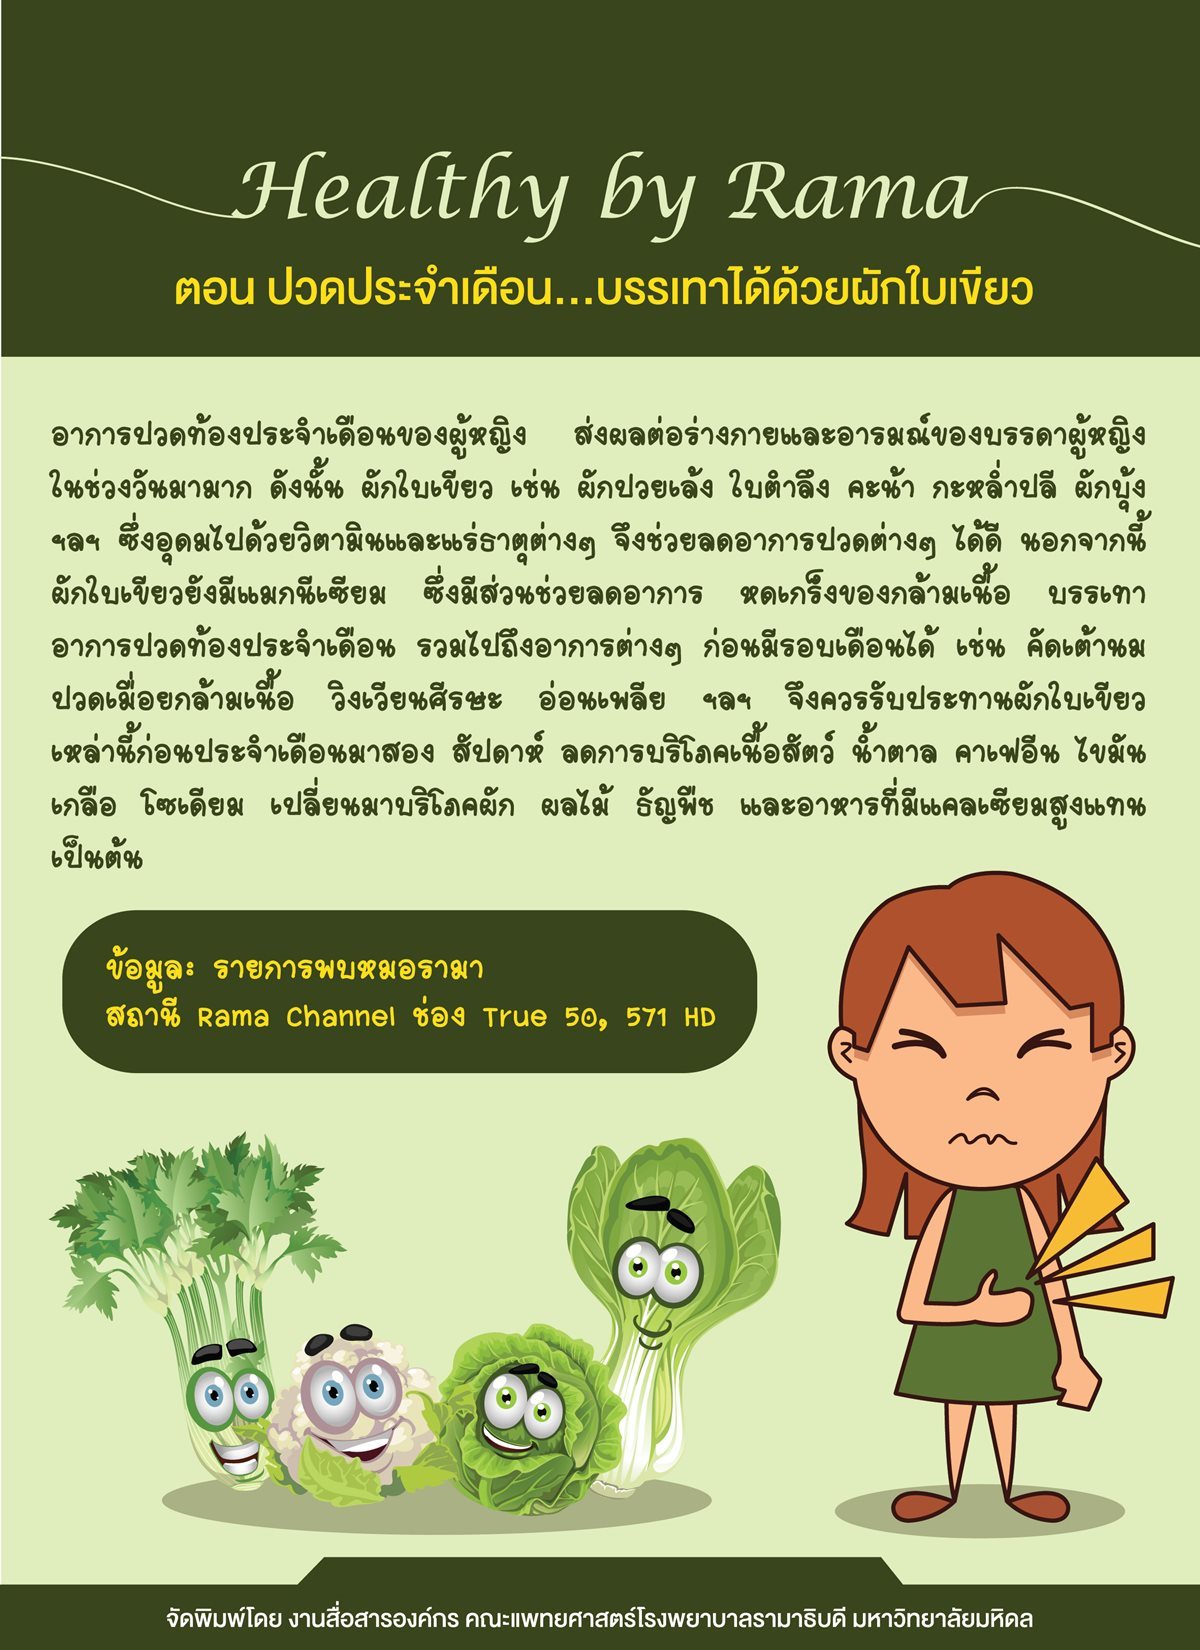 Healthy By Rama ตอน ปวดประจำเดือน...รักษาหายได้ด้วยผักใบเขียว